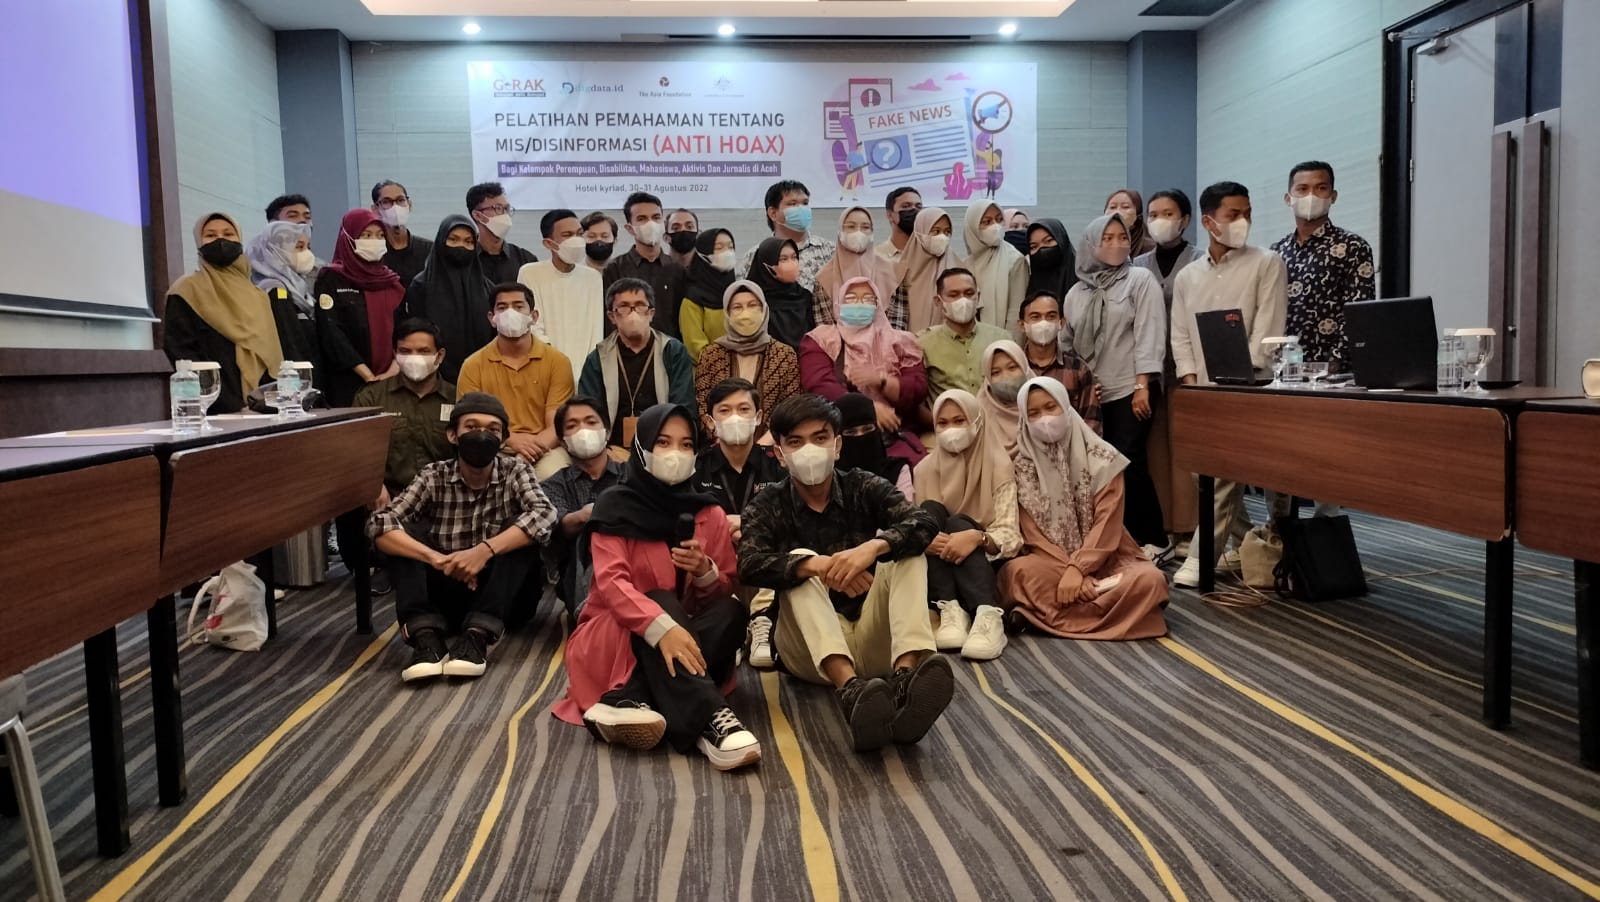 Jelang Pemilu 2024, GeRAK Aceh Latih Komunitas Anak Muda Tentang Mis/Disinformasi